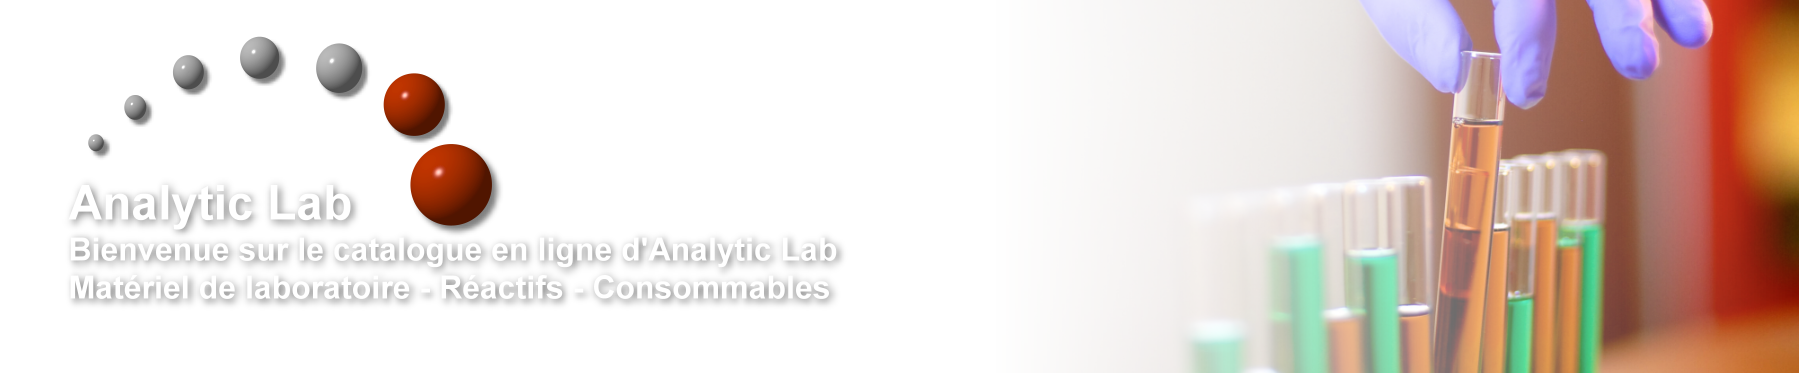 Analytic Lab - Merck - Corning - Buchi - Dutscher - Carlo Erba - Axygen - Honeywell - SDS - Iris - Matériel de labo - Réactifs et consommables - Produits chimiques - Montpellier -34 - Grossiste - Revendeur